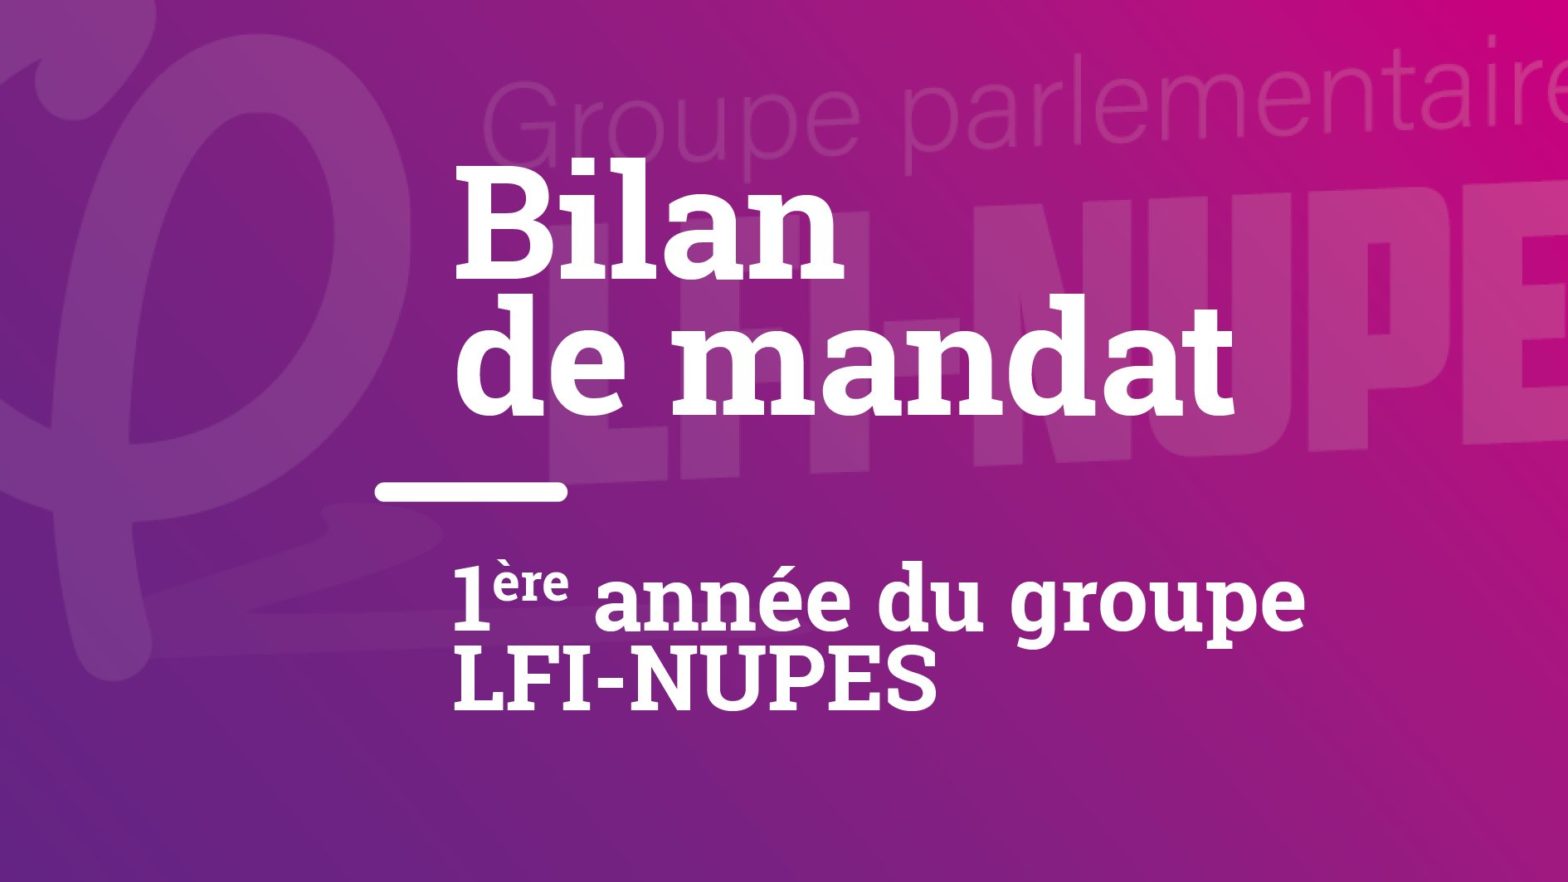 Bilan de mandat – 1ère année du groupe LFI-NUPES